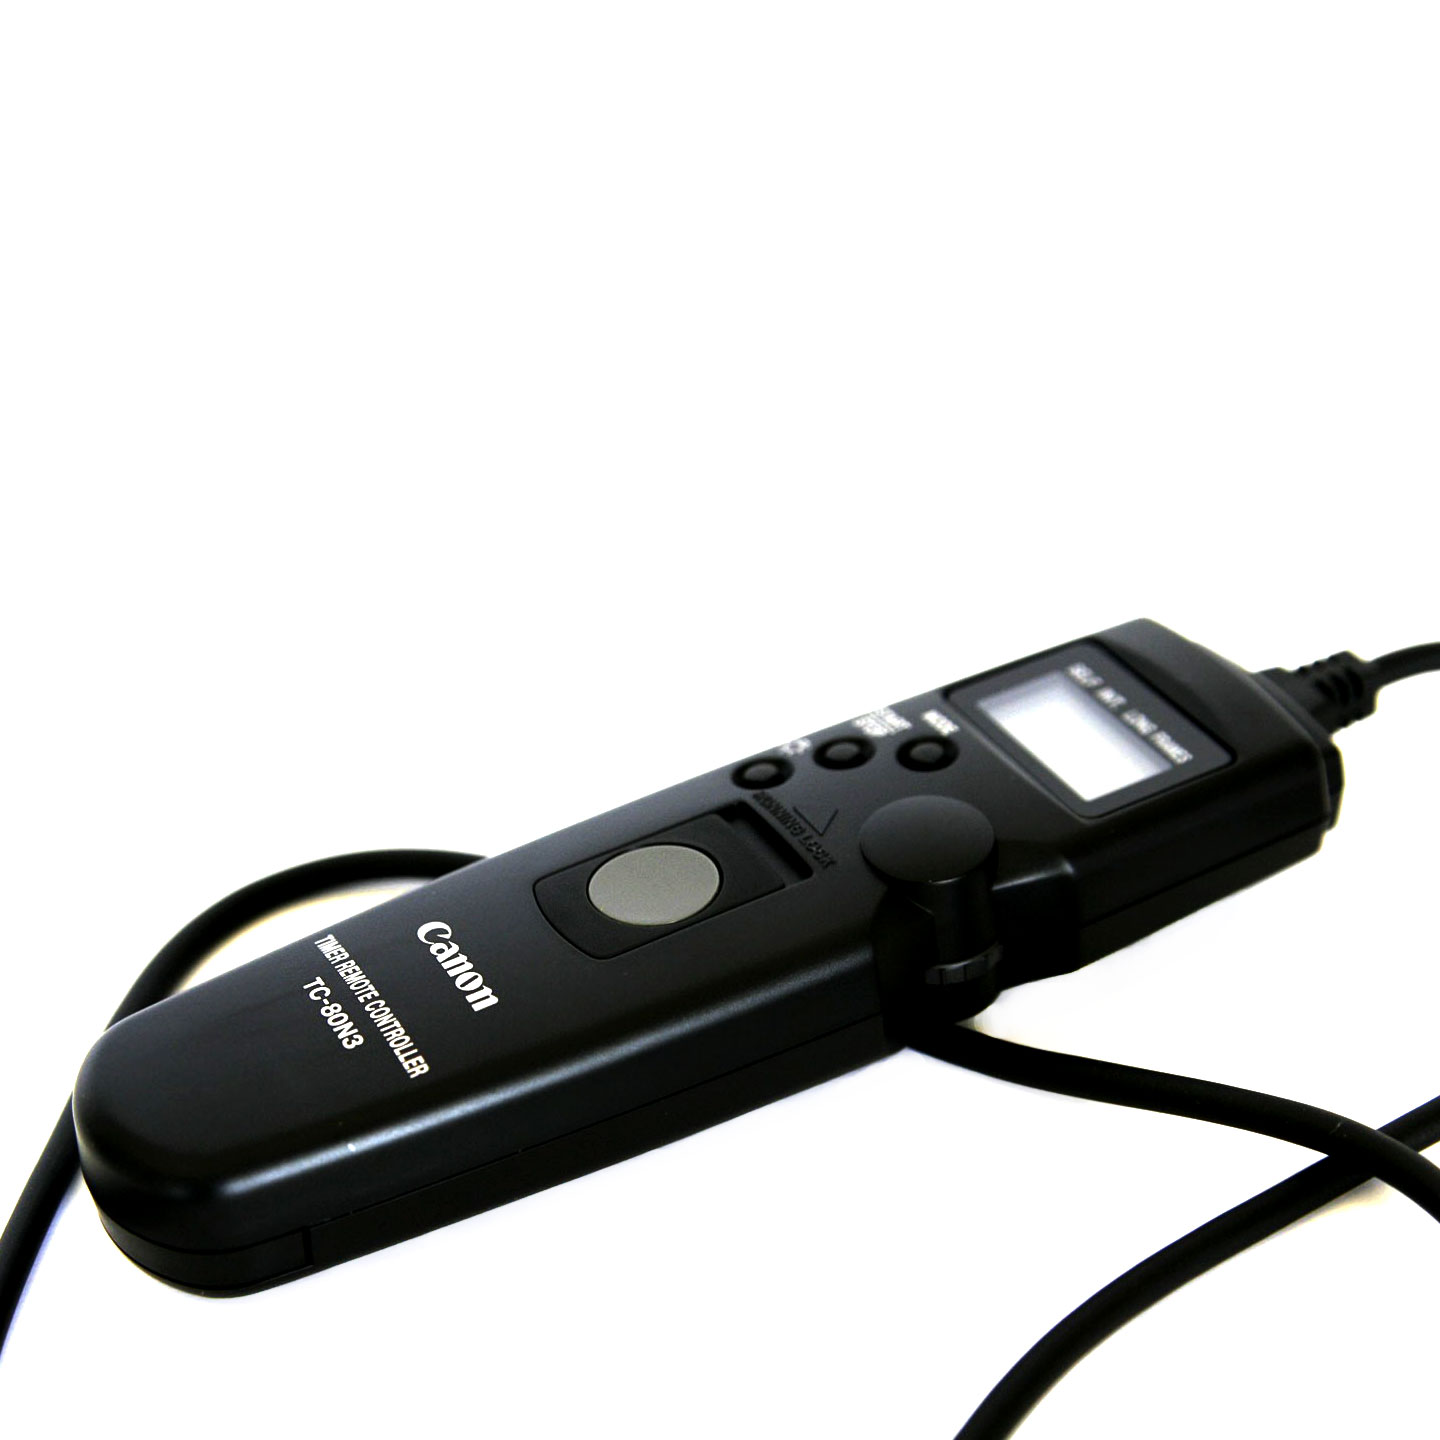 Спусковой тросик Canon Timer Remote Controller TC-80N3 с таймером